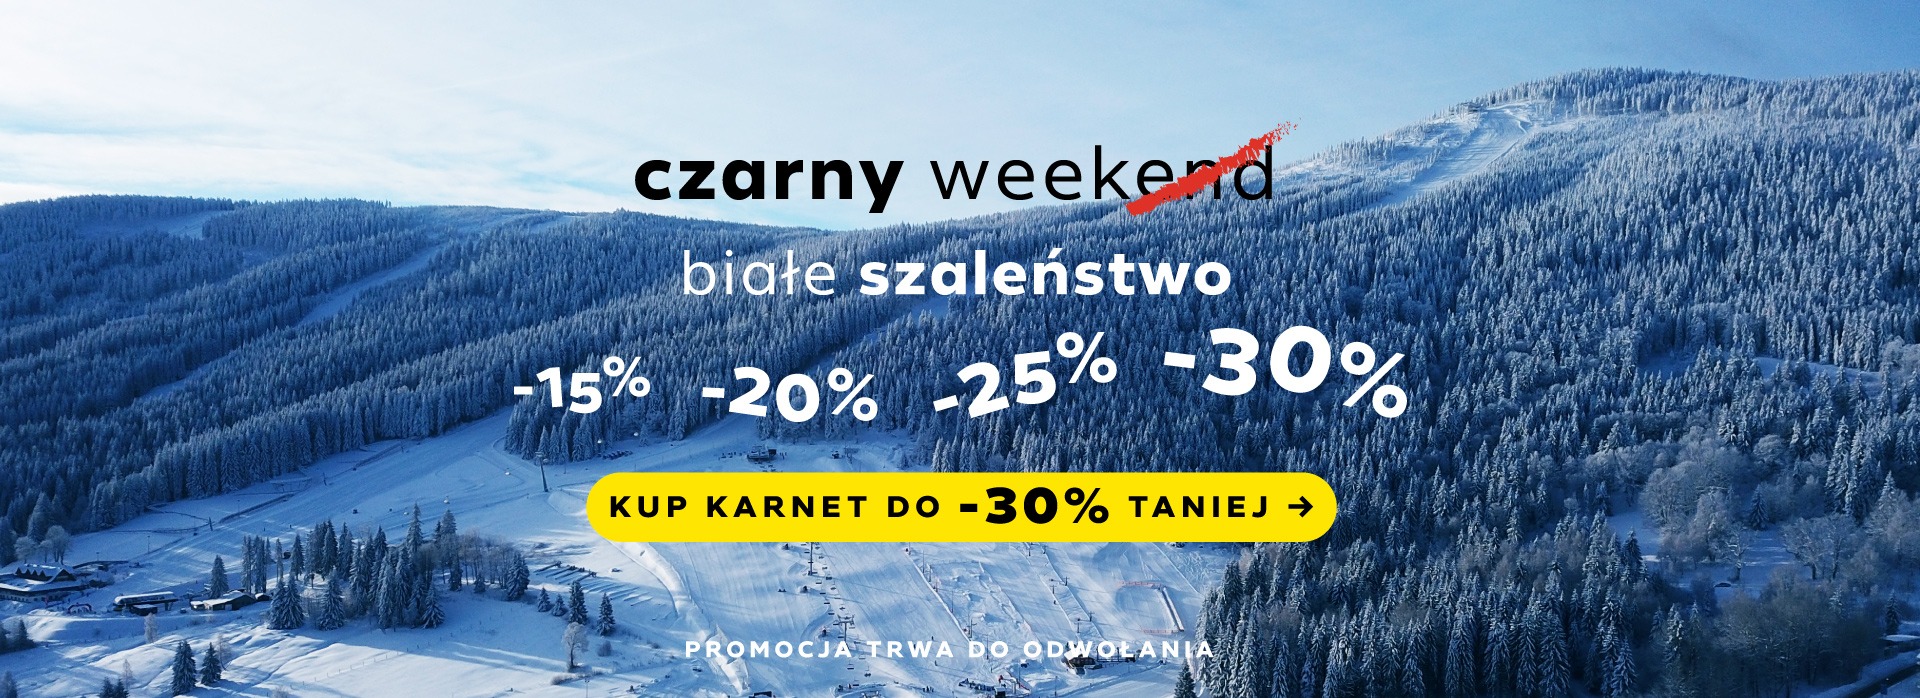 Black Week - Czarna Góra Resort - Kup karnet online do -30%